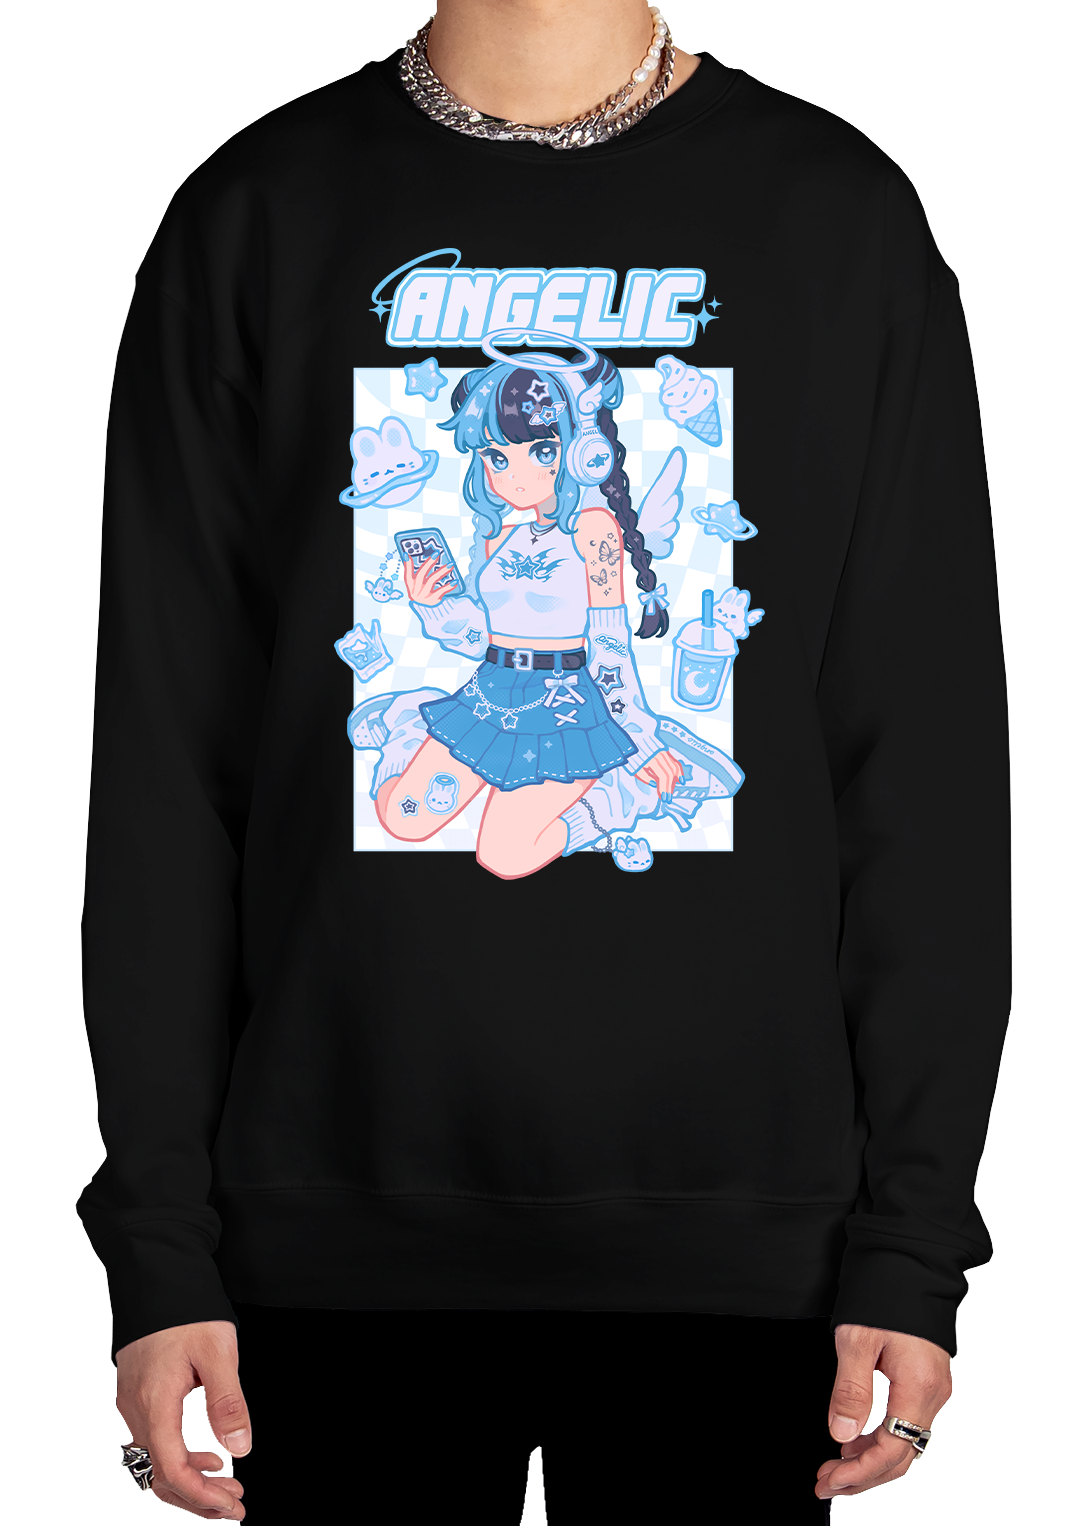 Angelic Sweatshirt